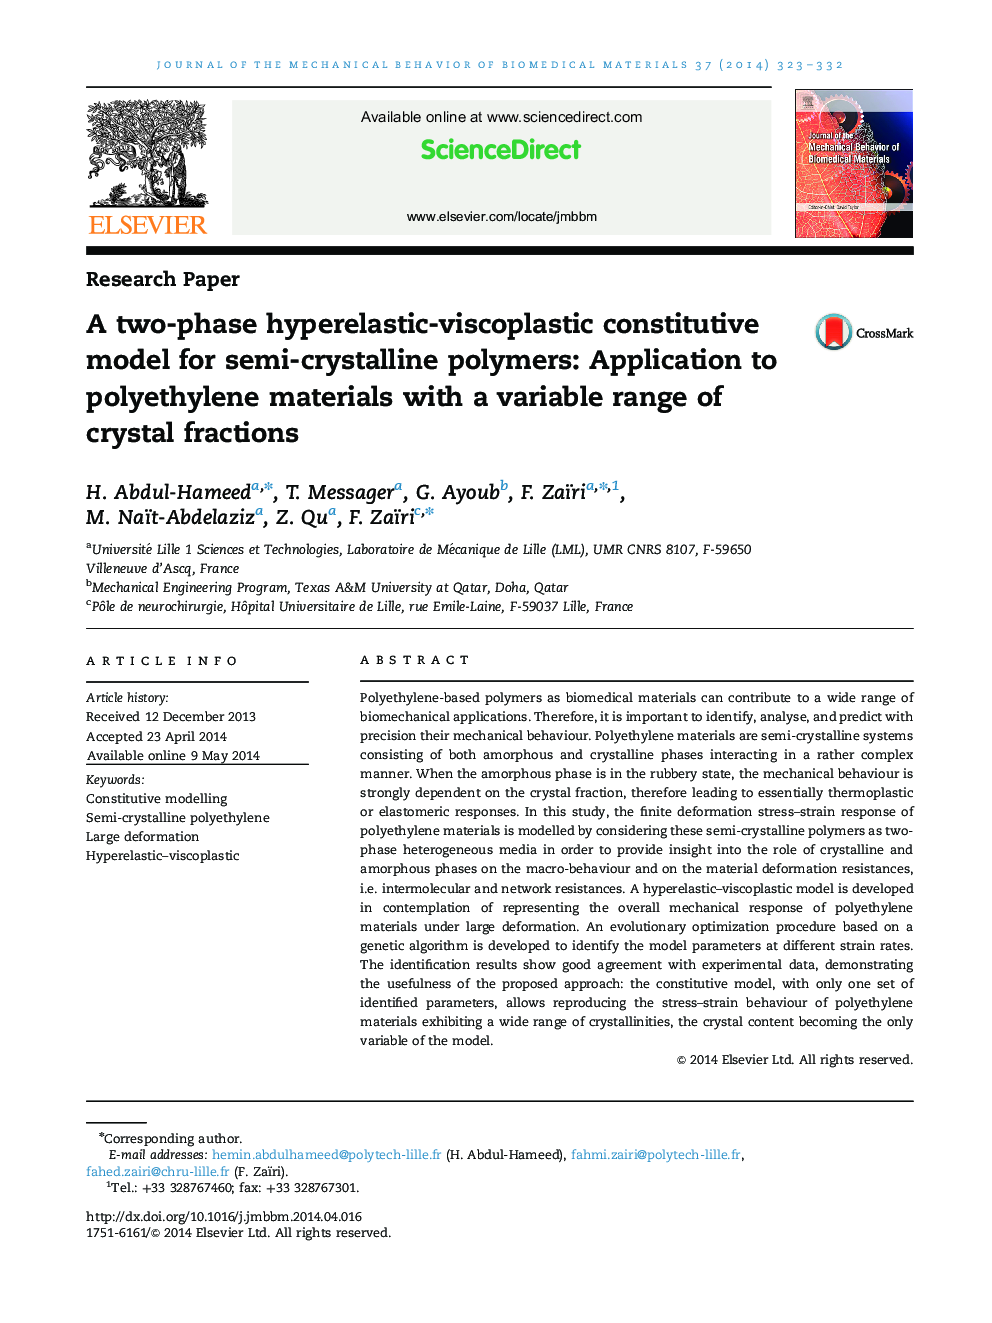 یک مدل سازنده دوپارامر-ویسکوپلاستی برای پلیمرهای نیمه بلوری: کاربرد در مواد پلی اتیلن با طیف متغیر کسرهای کریستال 